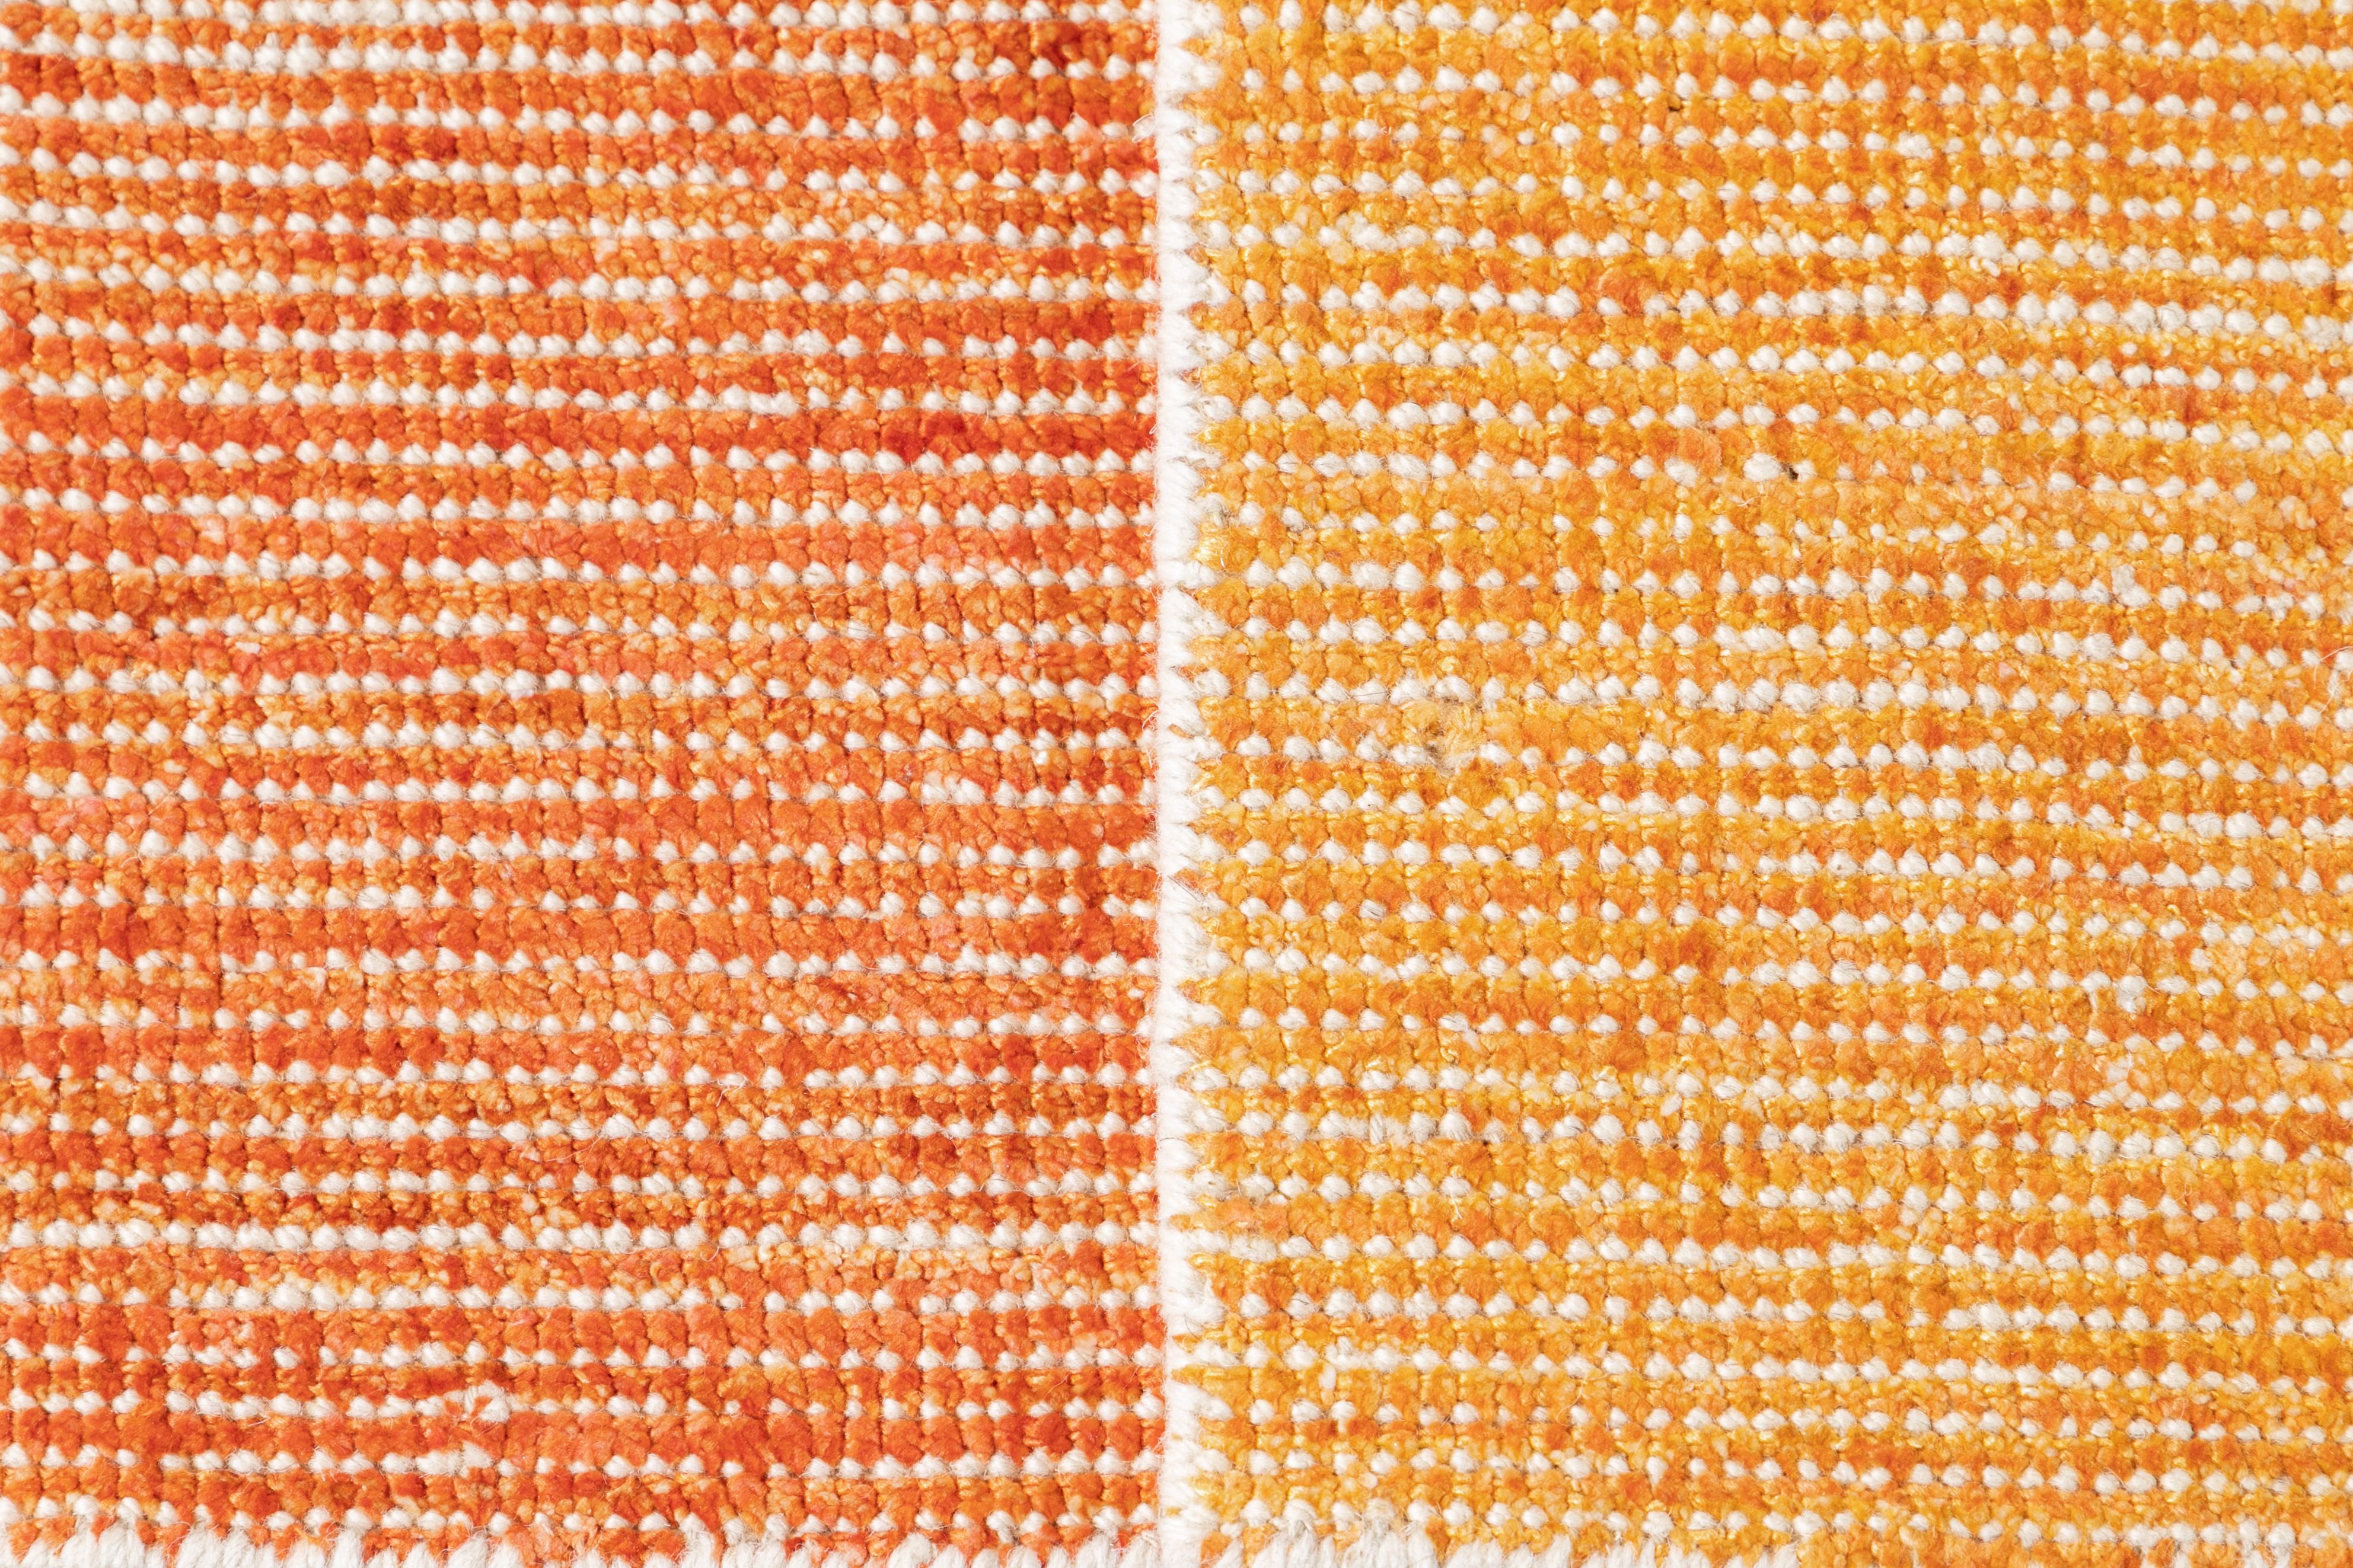 Boho-Teppich aus Wolle und Seide nach Maß. Kundenspezifische Größen und Farben auf Bestellung.

Material: Wolle/Bambusseide
Vorlaufzeit: Ca. 12 Wochen
Verfügbare Farben: über 100 Farbtöne.
Hergestellt in Indien.